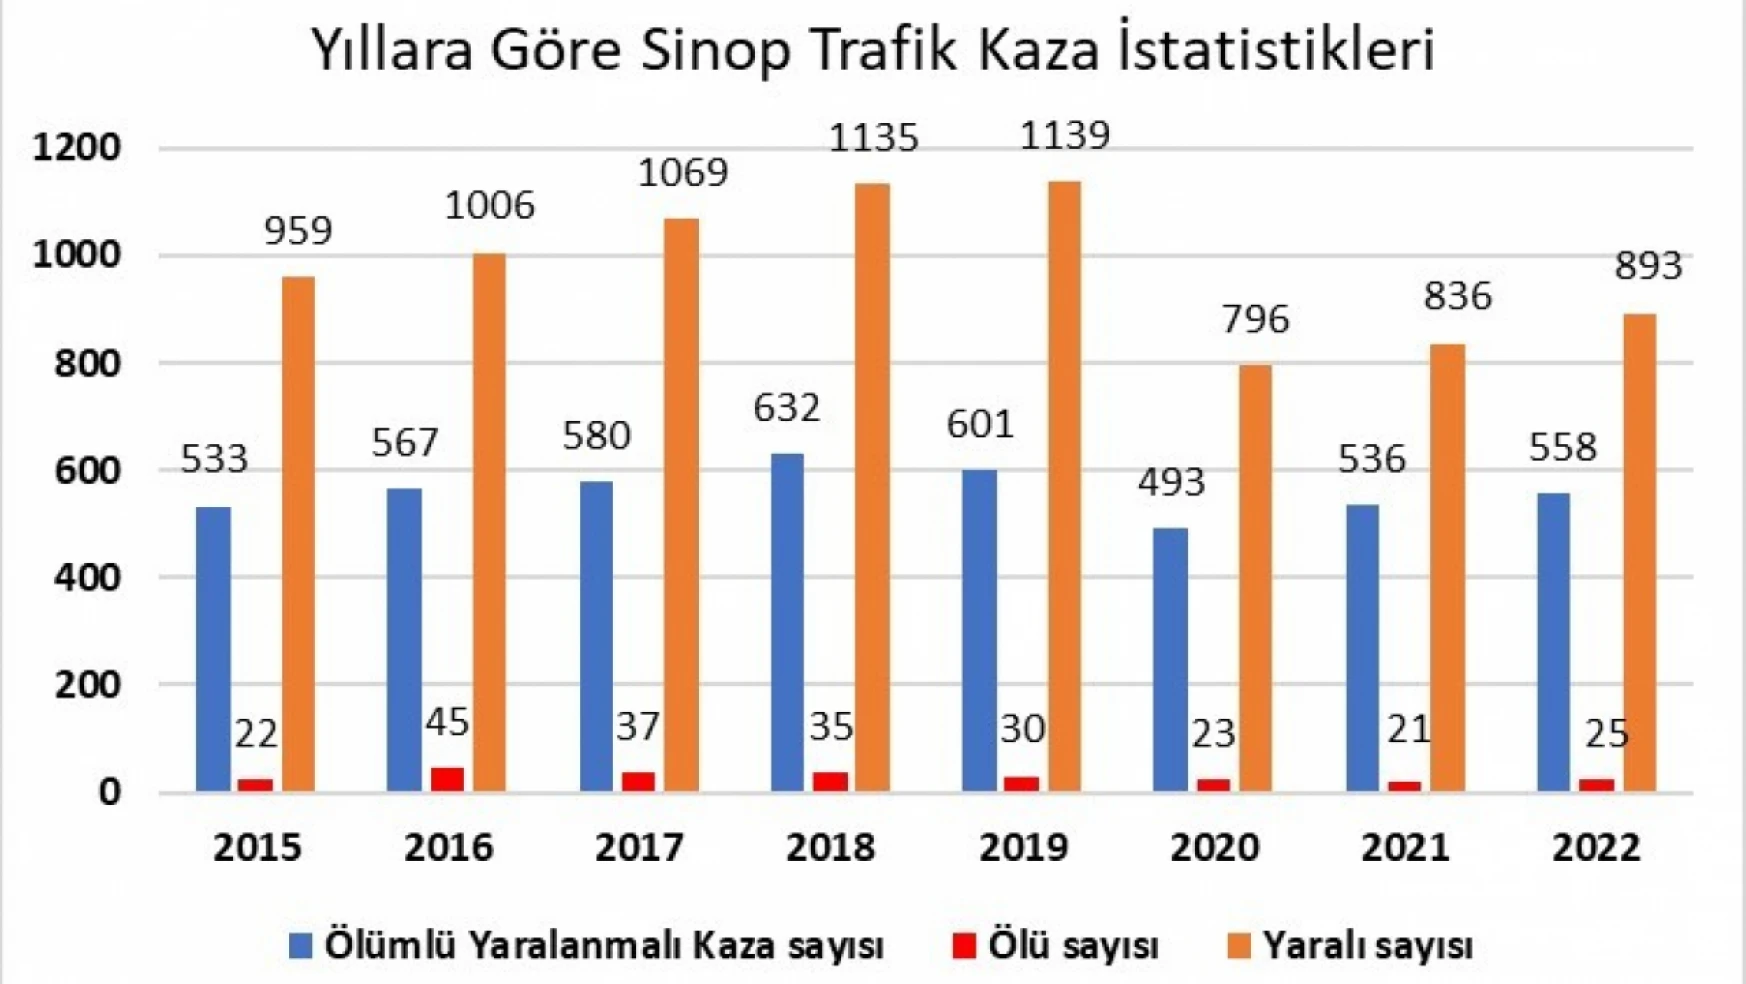 Sinop'ta 2022 yılında 2 bin 7 trafik kazası oldu